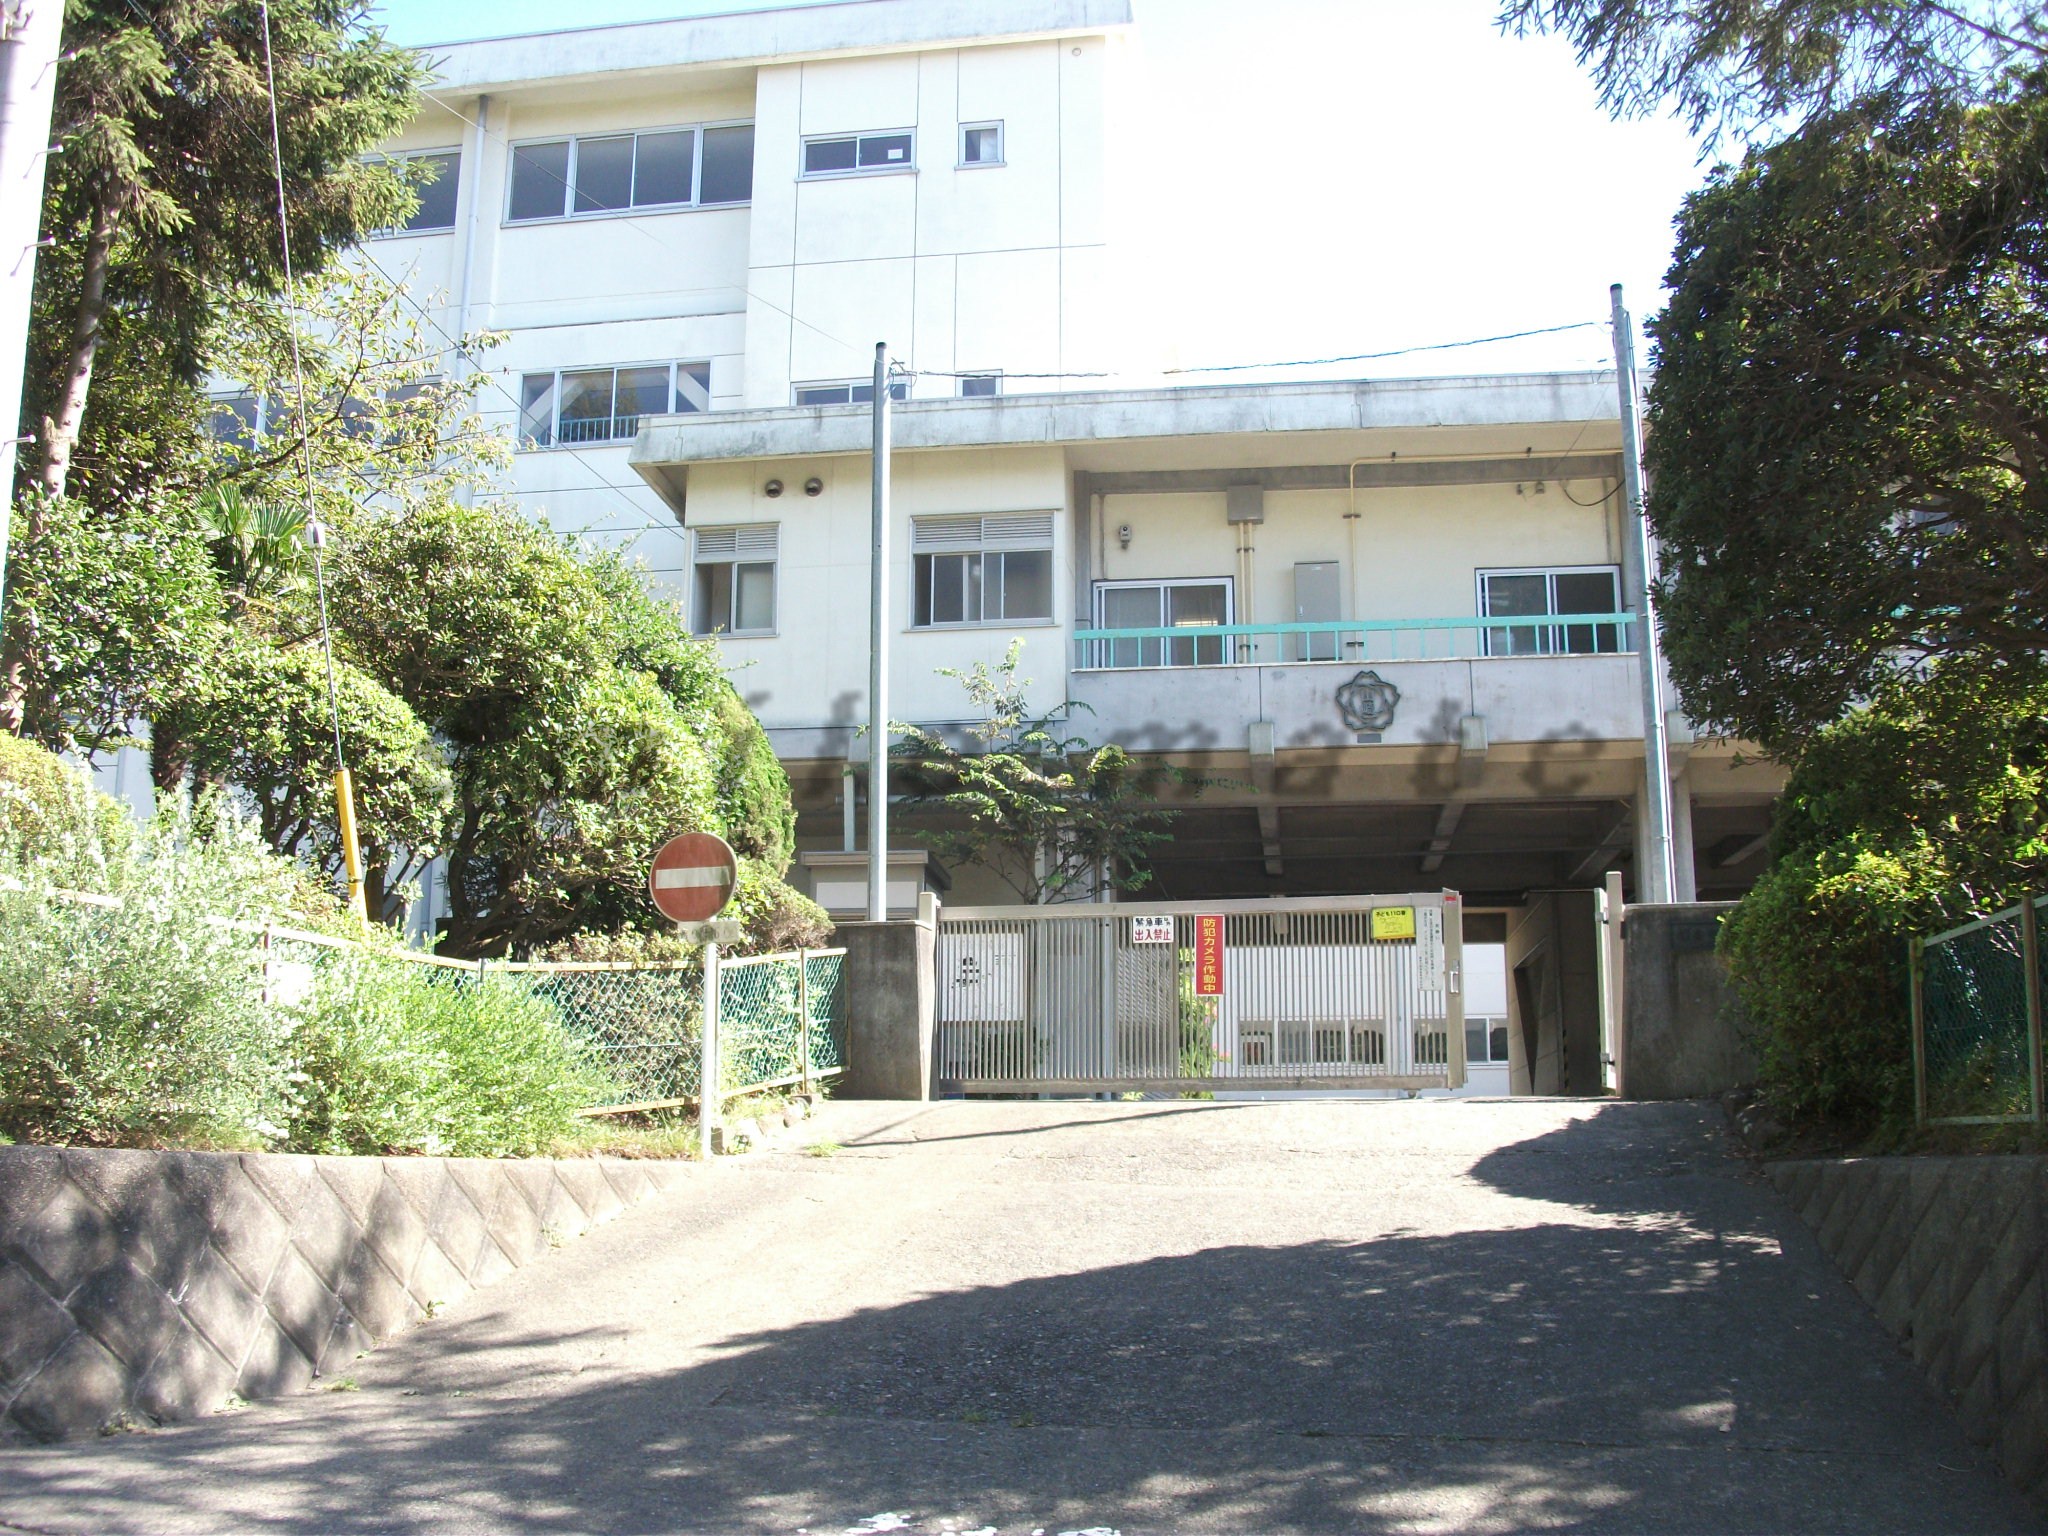 Primary school. 764m to Kamakura City Yamazaki Elementary School (elementary school)